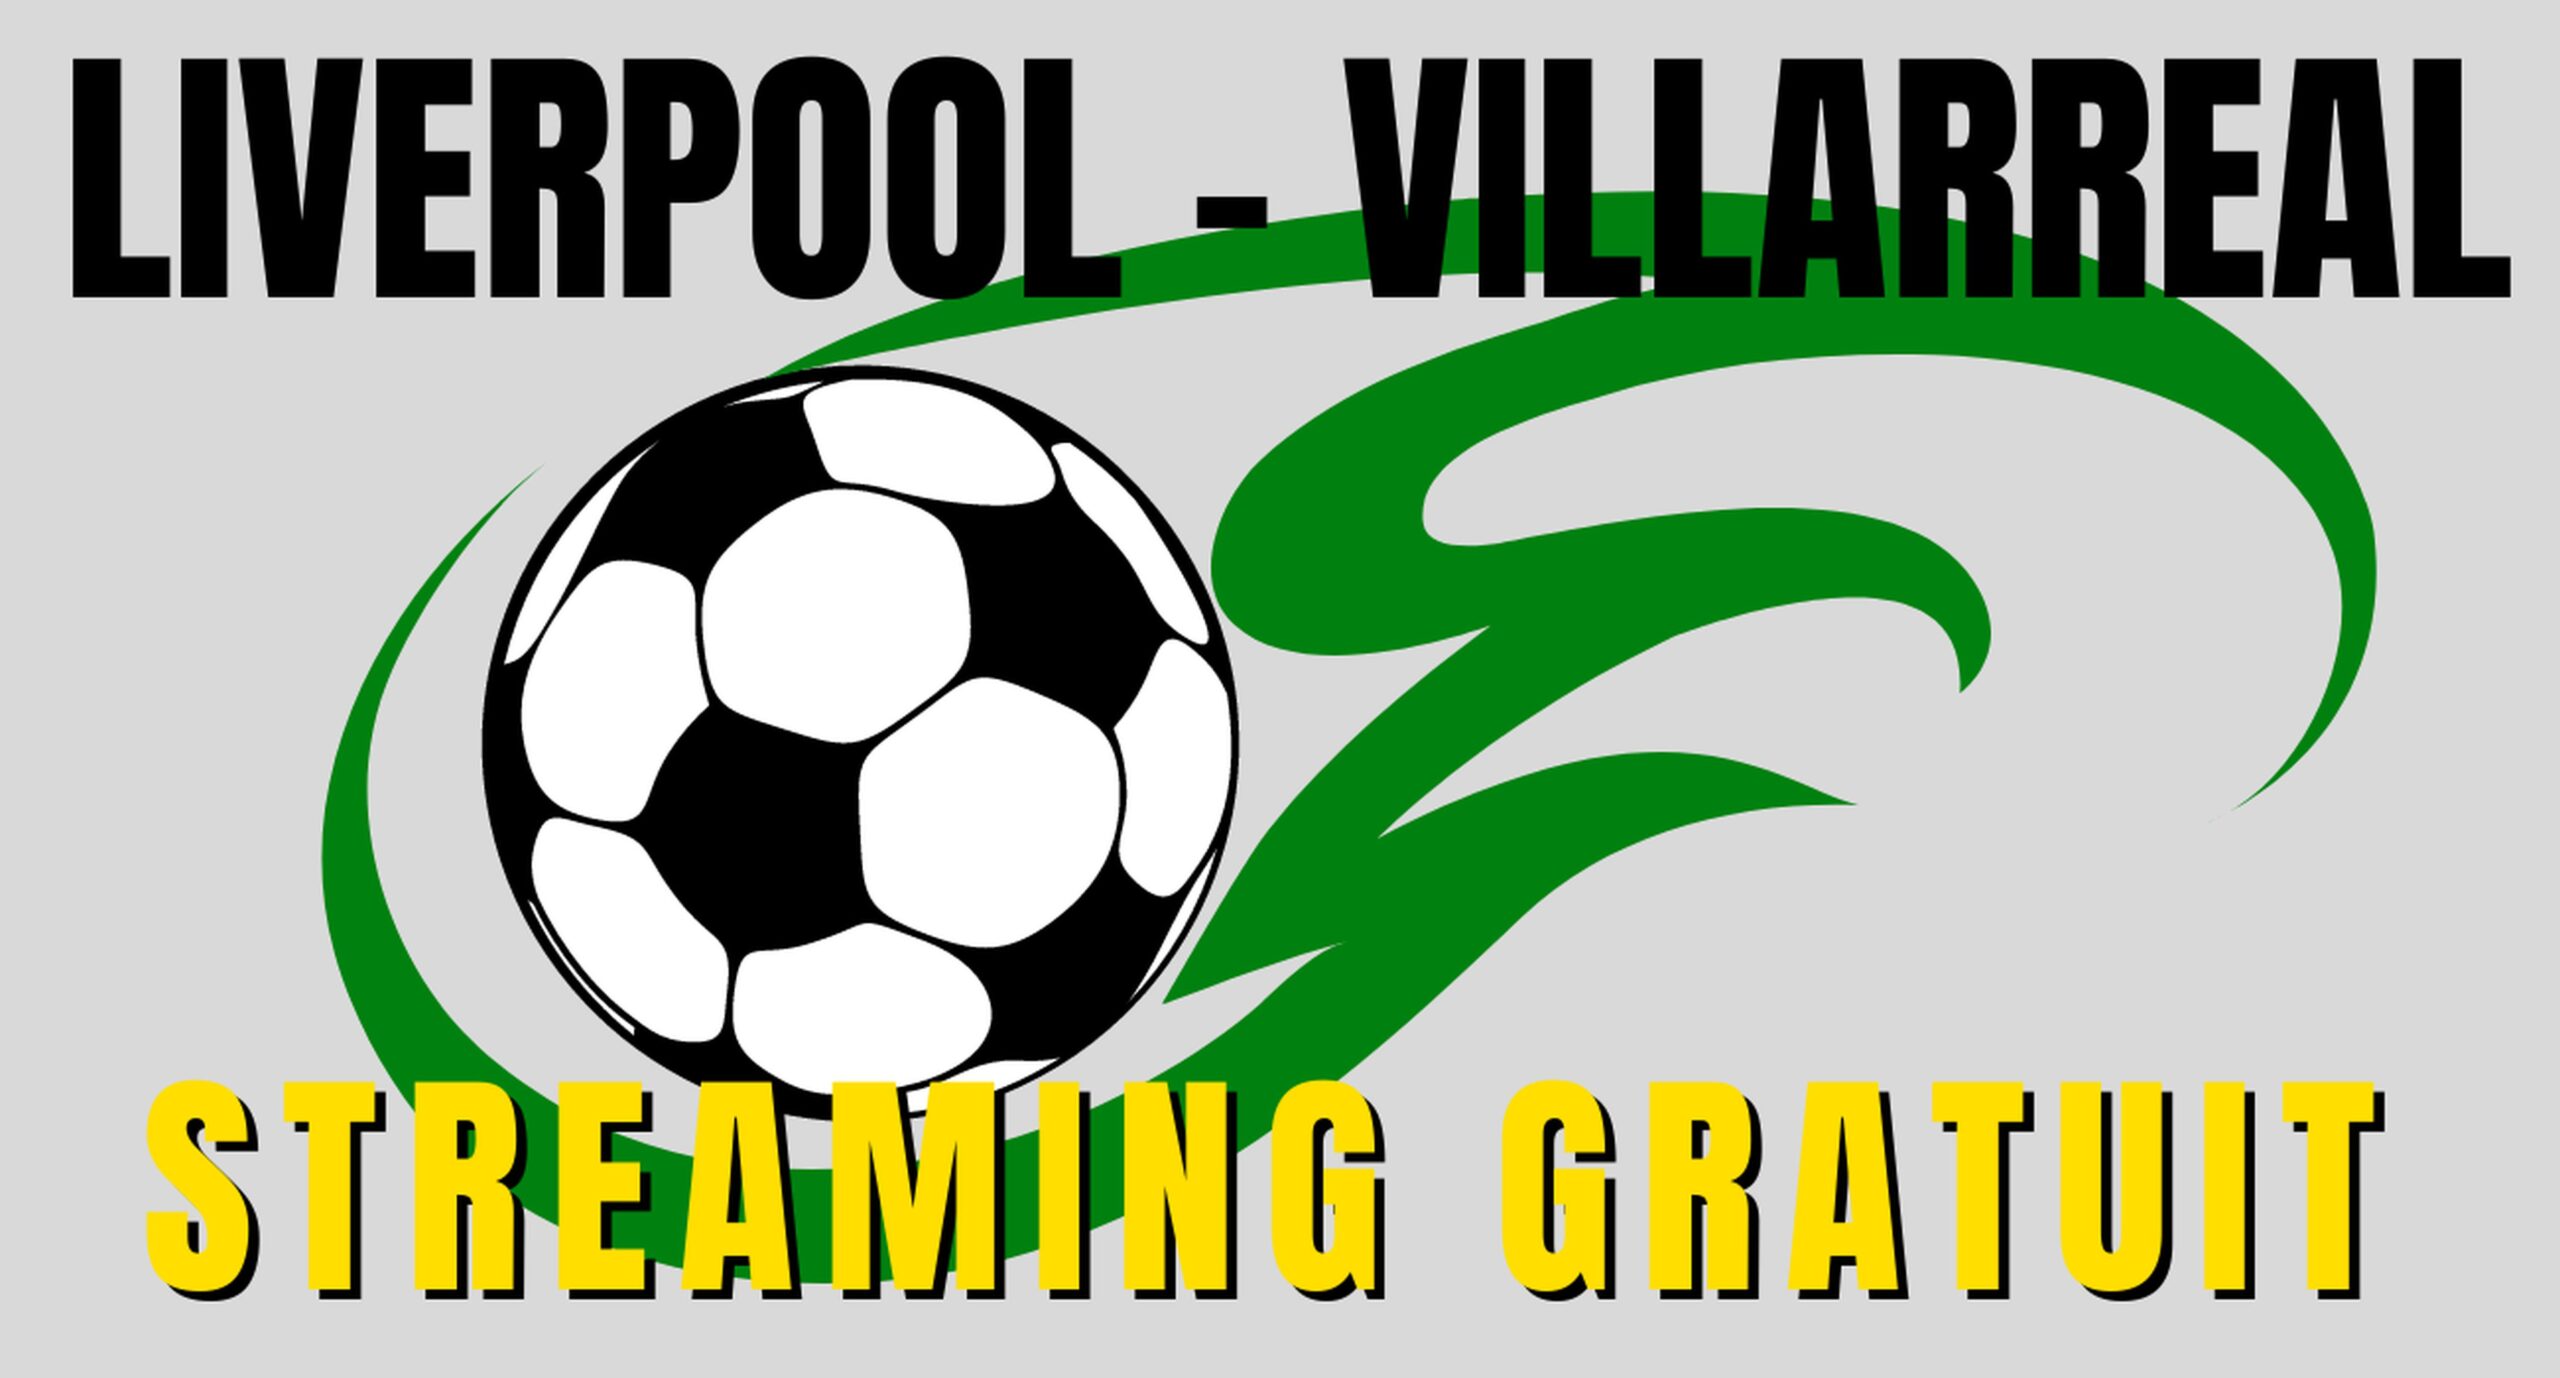 Liverpool Villarreal en Streaming gratuit sur une chaîne étrangère 4